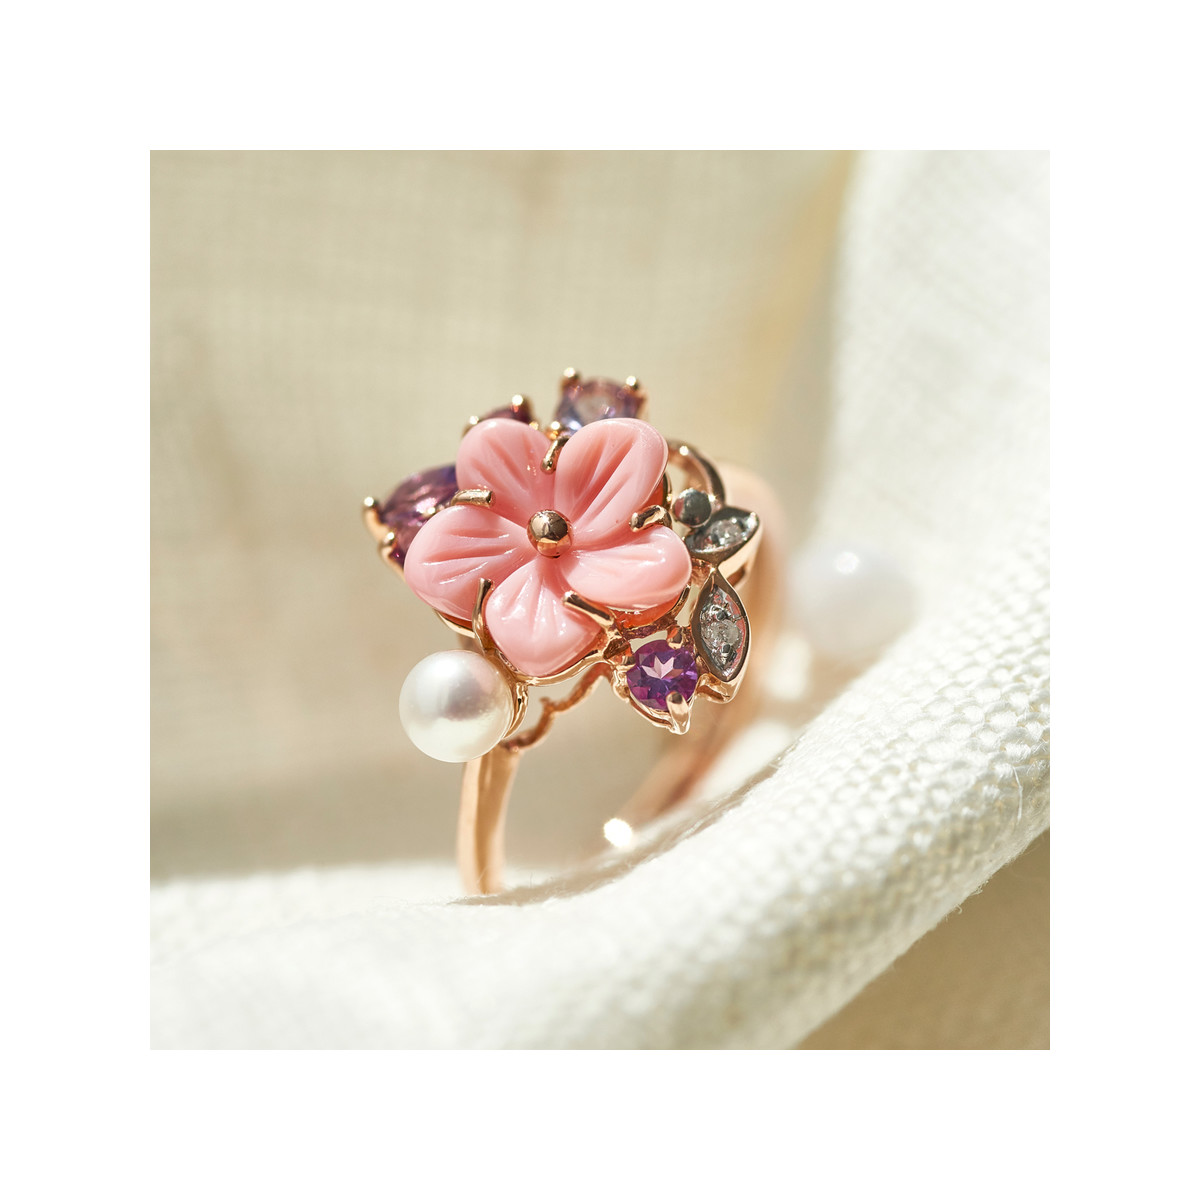 Bague or 375 rose fleur pierres fines diamants perle de culture de Chine et nacre rose - vue D2